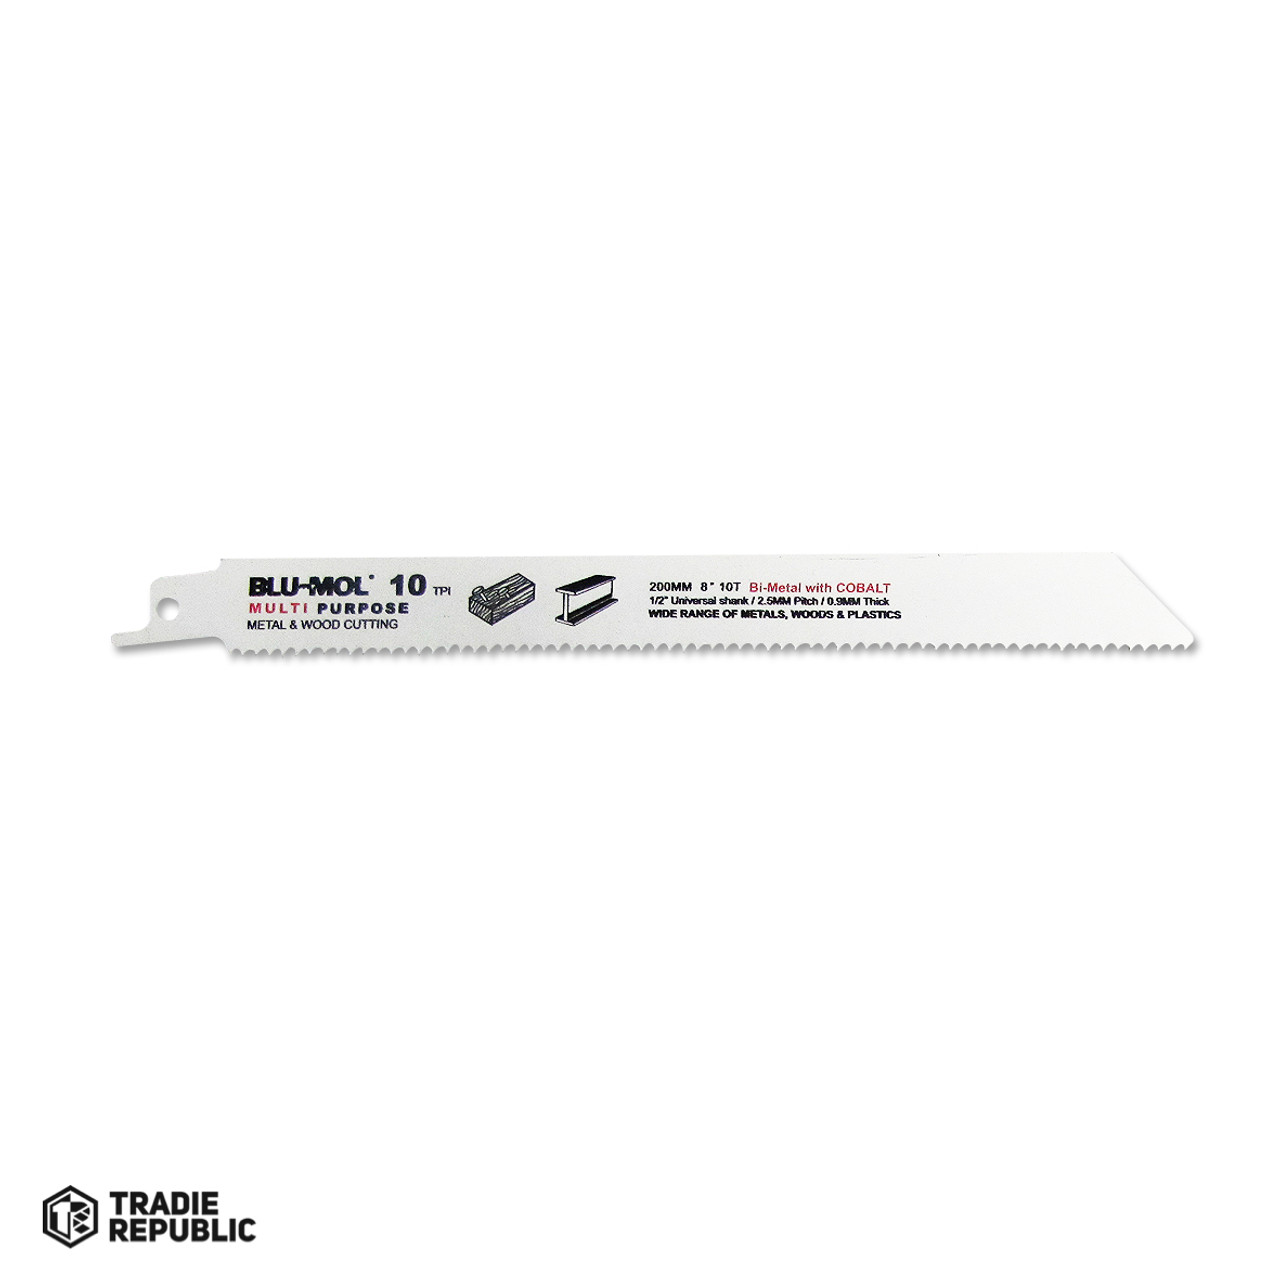 BL6479 Blu-Mol Recip Blade 8 X 10T Tpi Wood/mtl (single Blade)